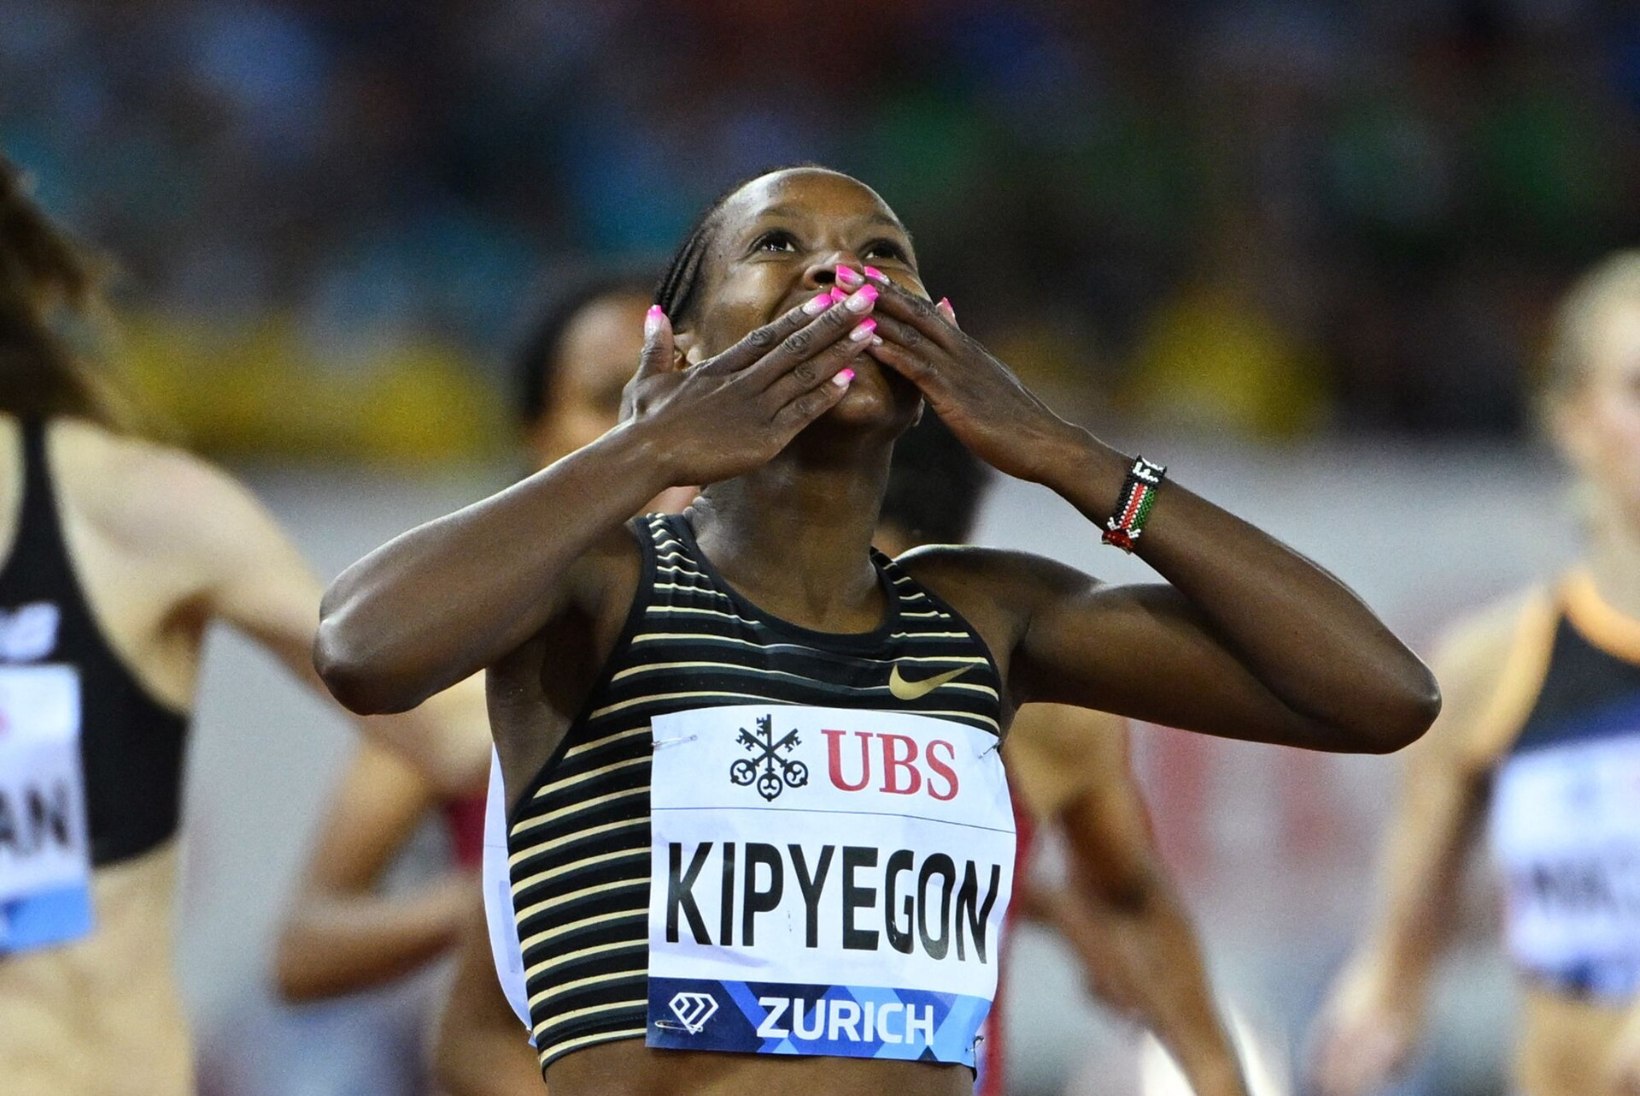 Olümpiavõitja seadis eesmärgiks 1500 meetri jooksu maailmarekordi purustamise